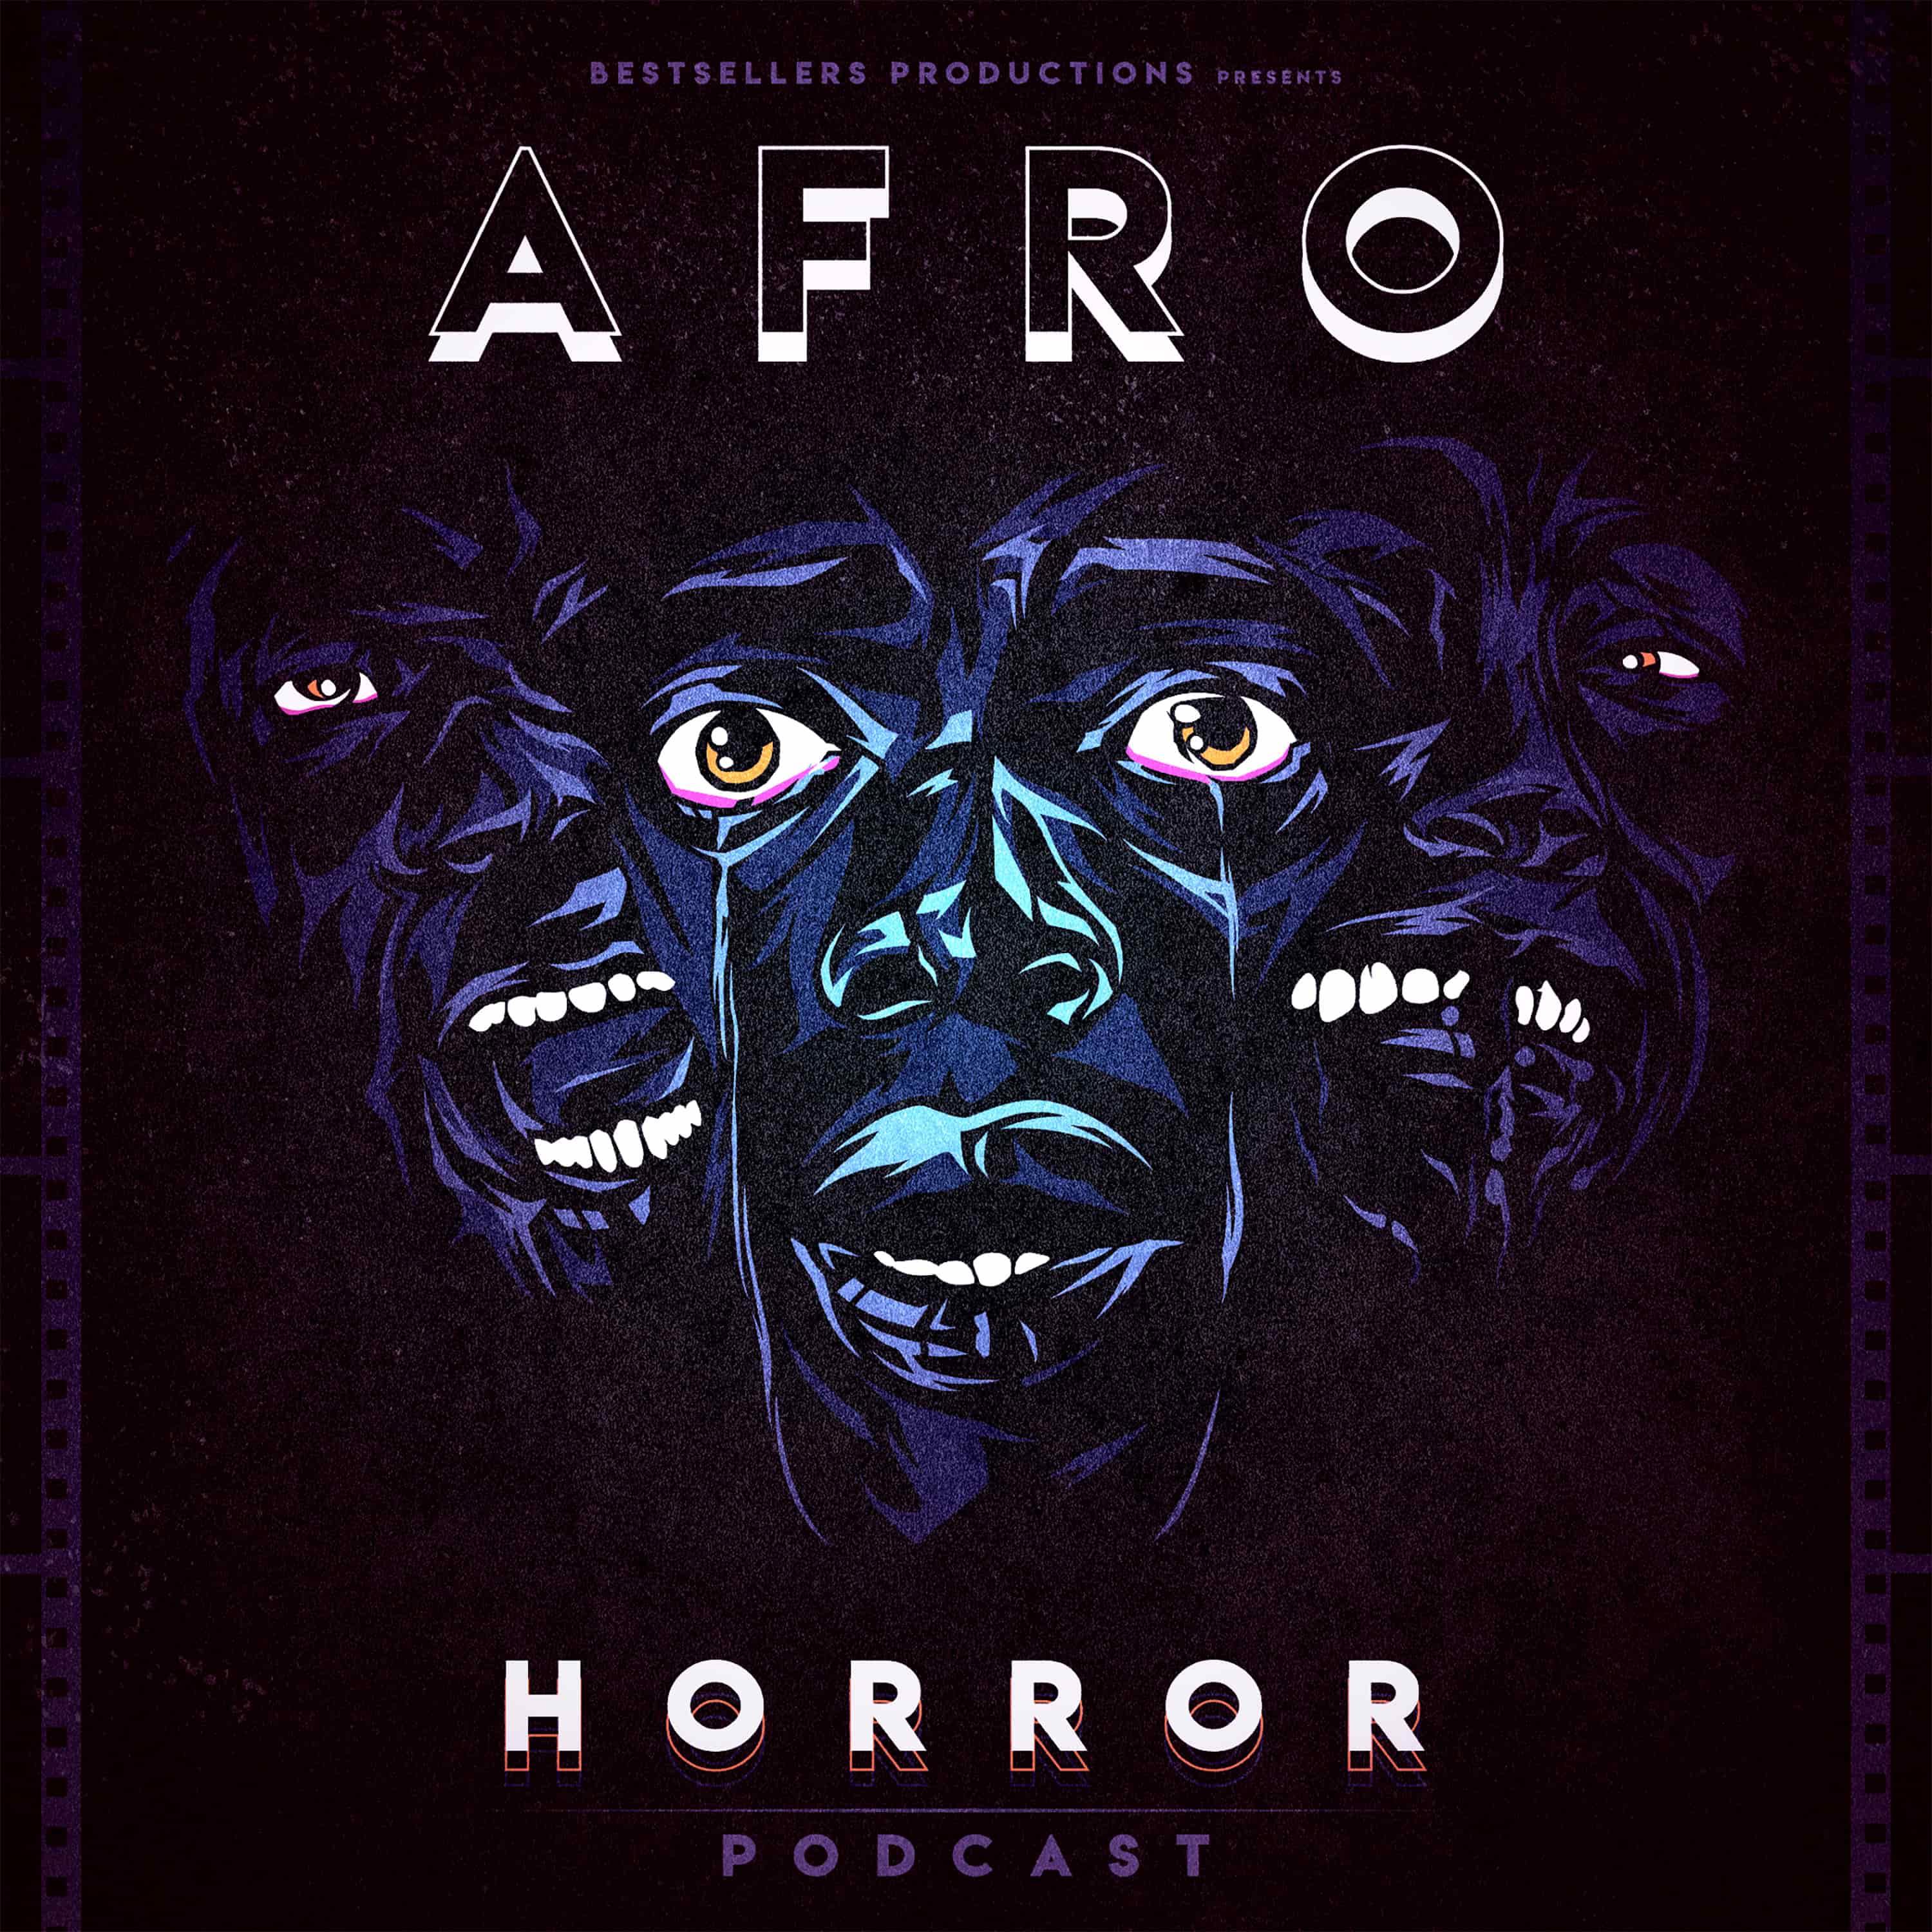 Artwork for podcast Afro Horror